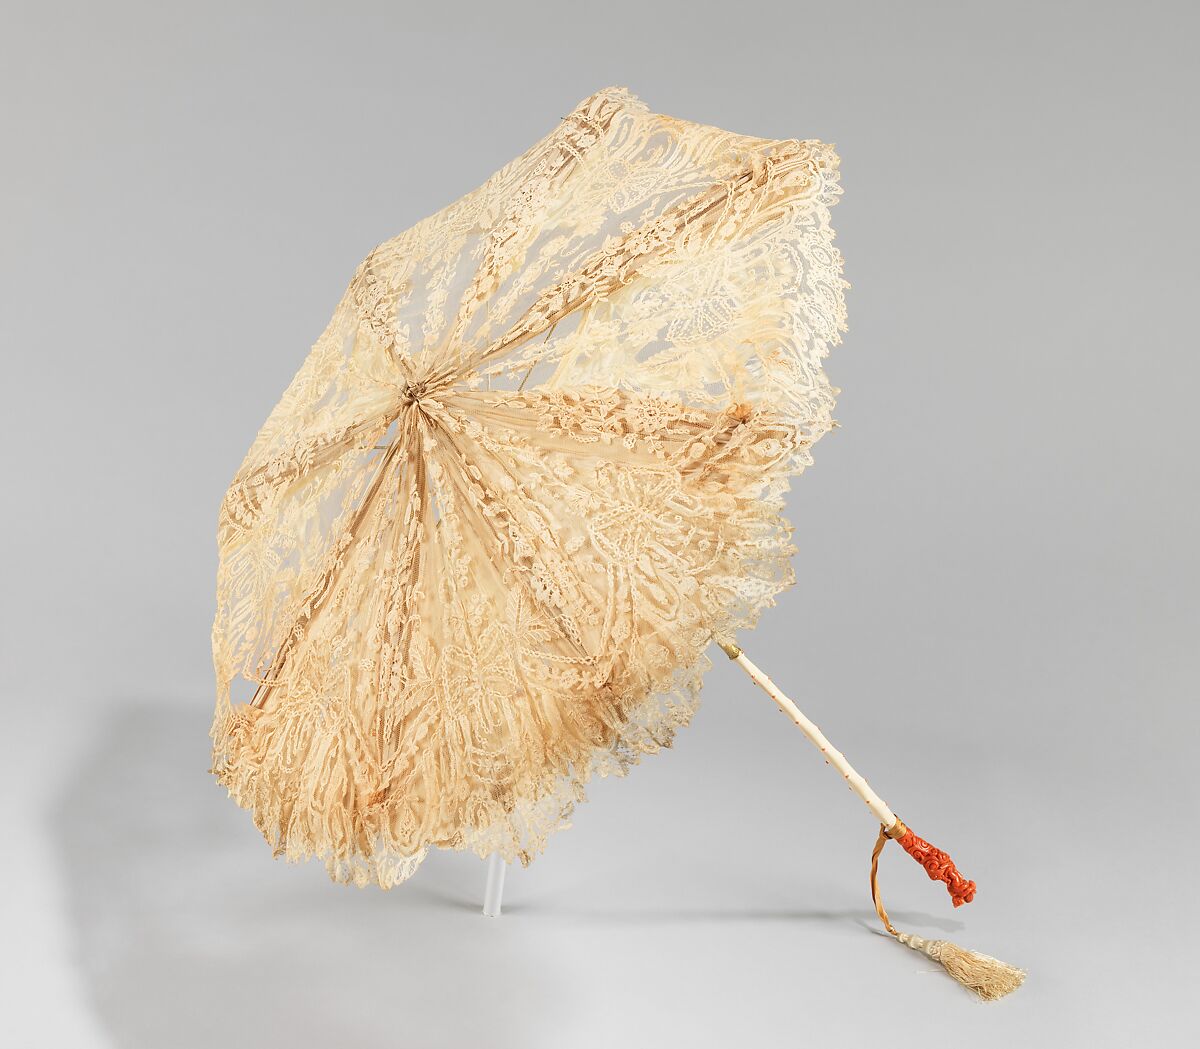 Зонт парасоль